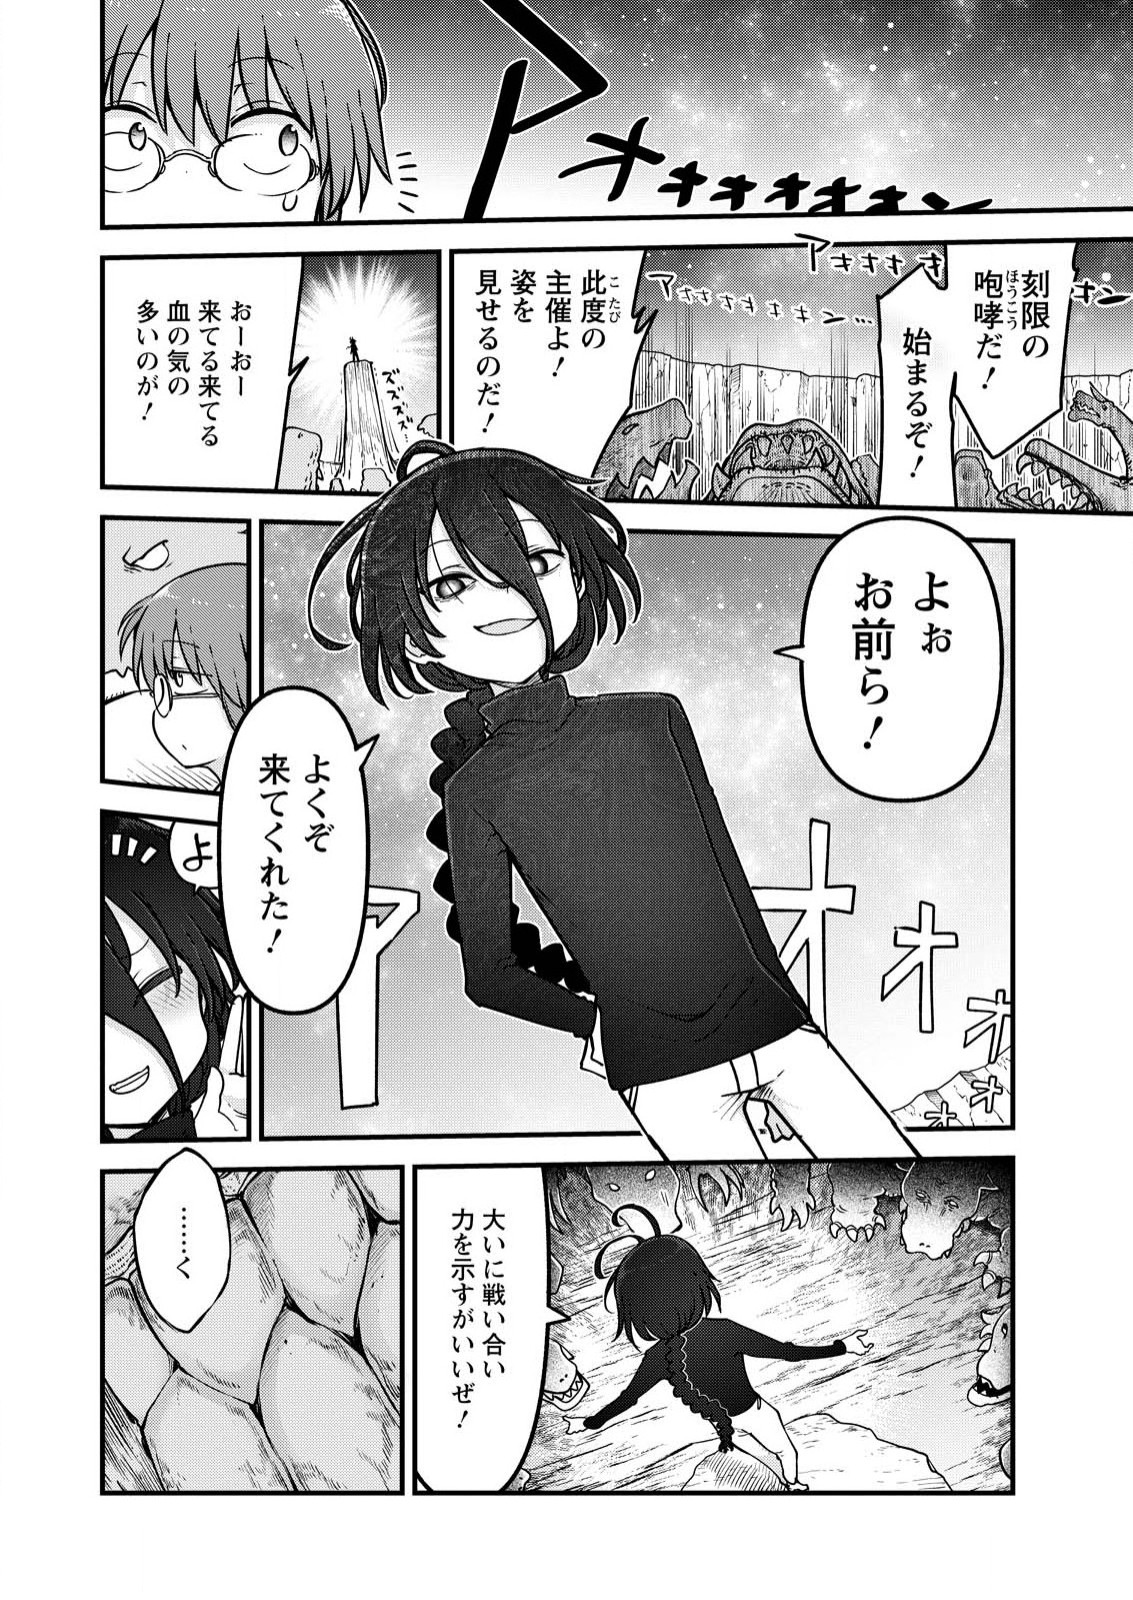 Kobayashi-san Chi no Maid Dragon - Chapter 142 - Page 3